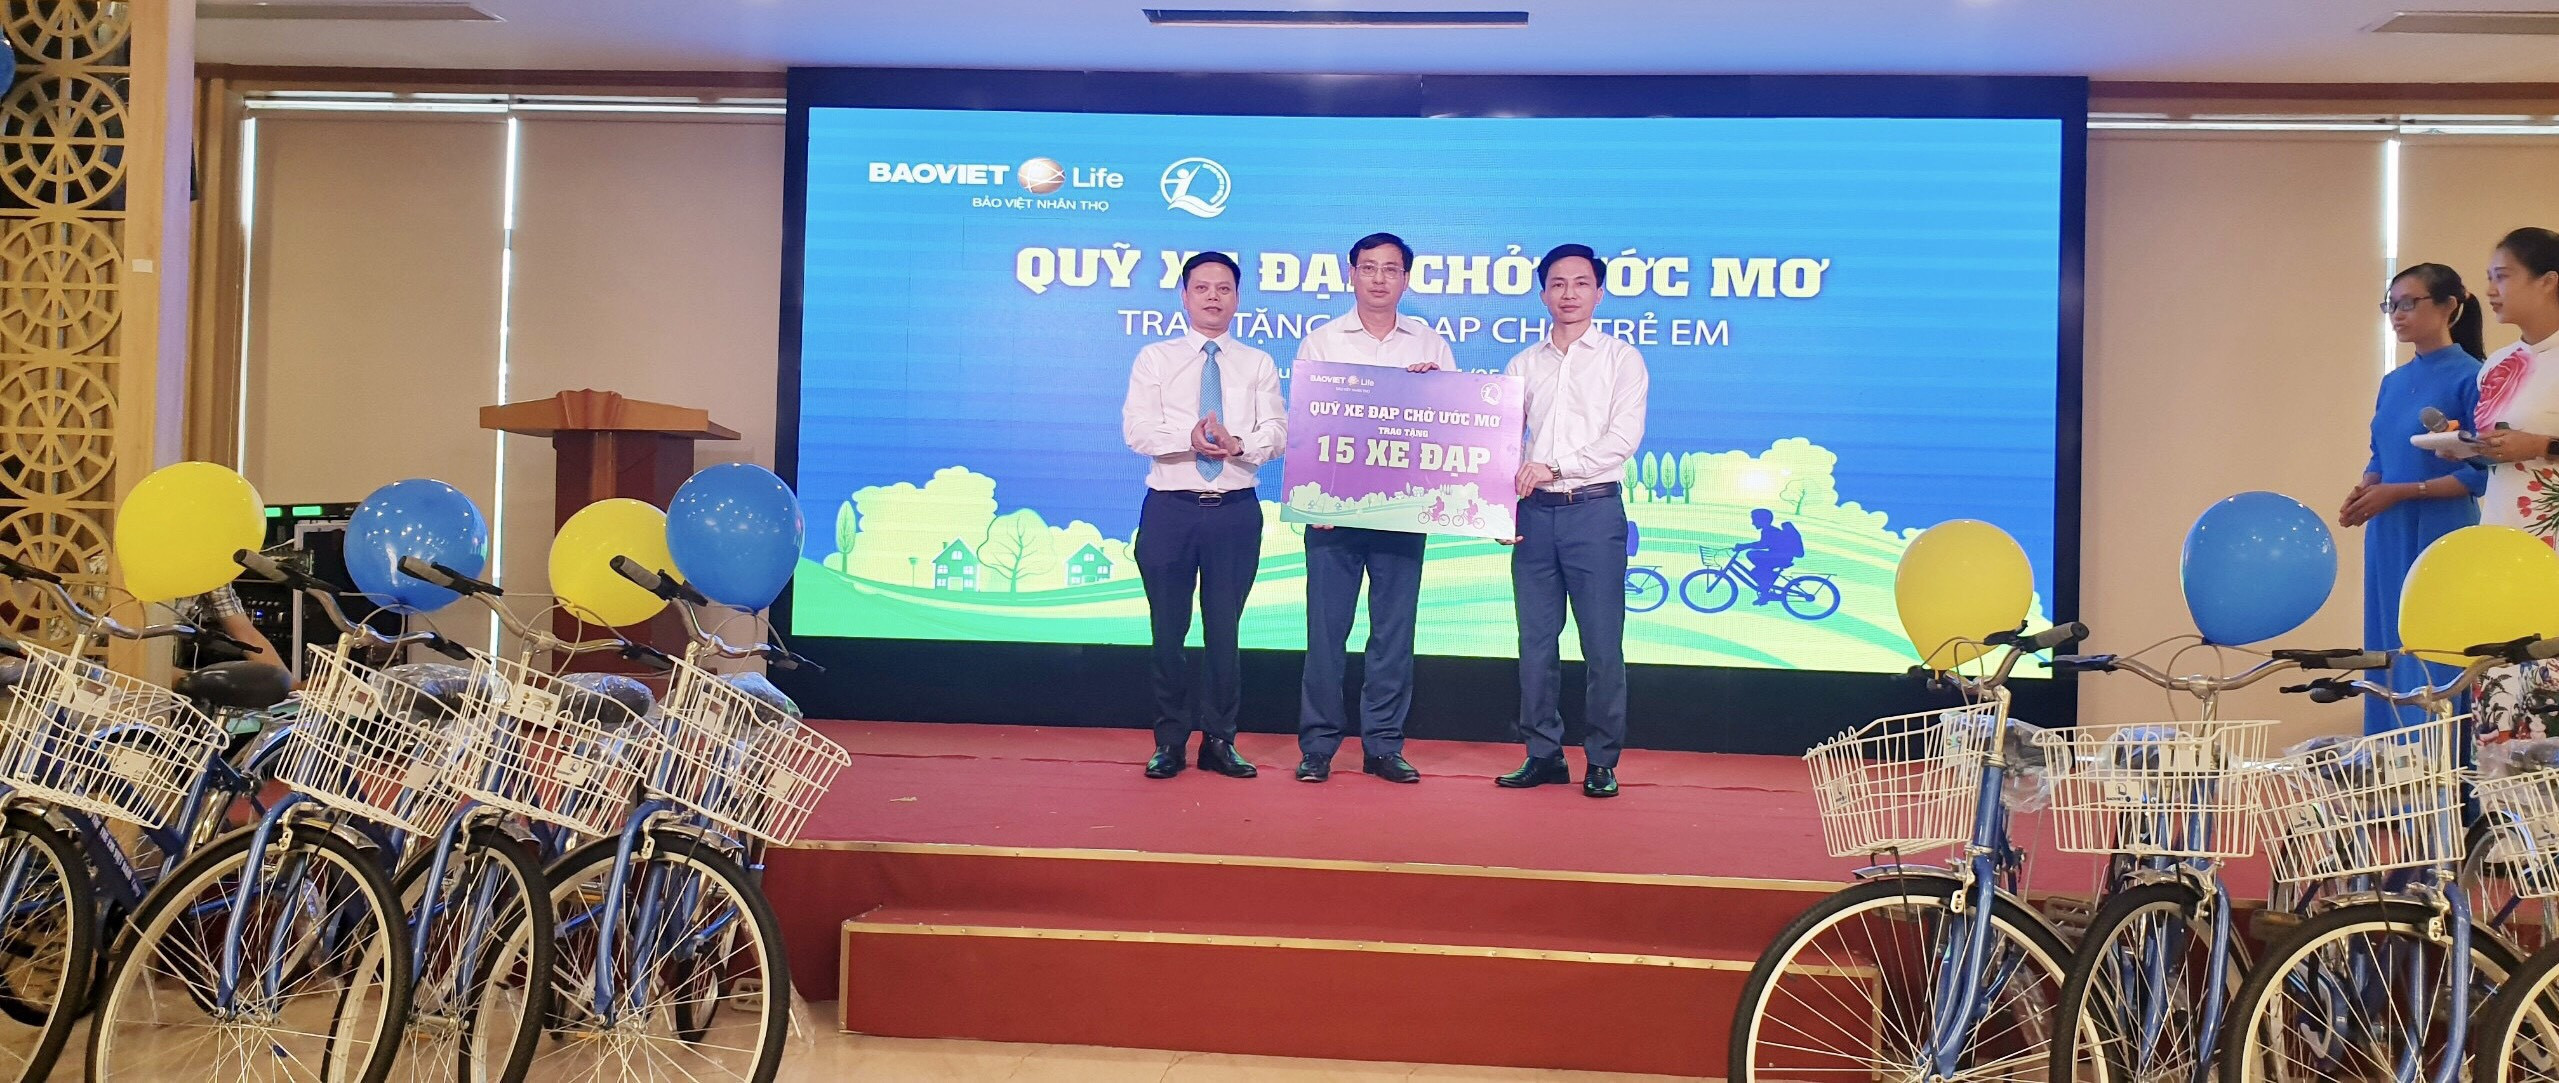 Trước đó, ngày 21 tháng 5, Bảo Việt Nhân thọ Bắc Nghệ An trao 30 xuất học bổng là xe đạp cho 30 học sinh nghèo (mỗi huyện 15 suất)  tại Quỳnh Lưu và Quỳ Hợp. Ảnh CTV